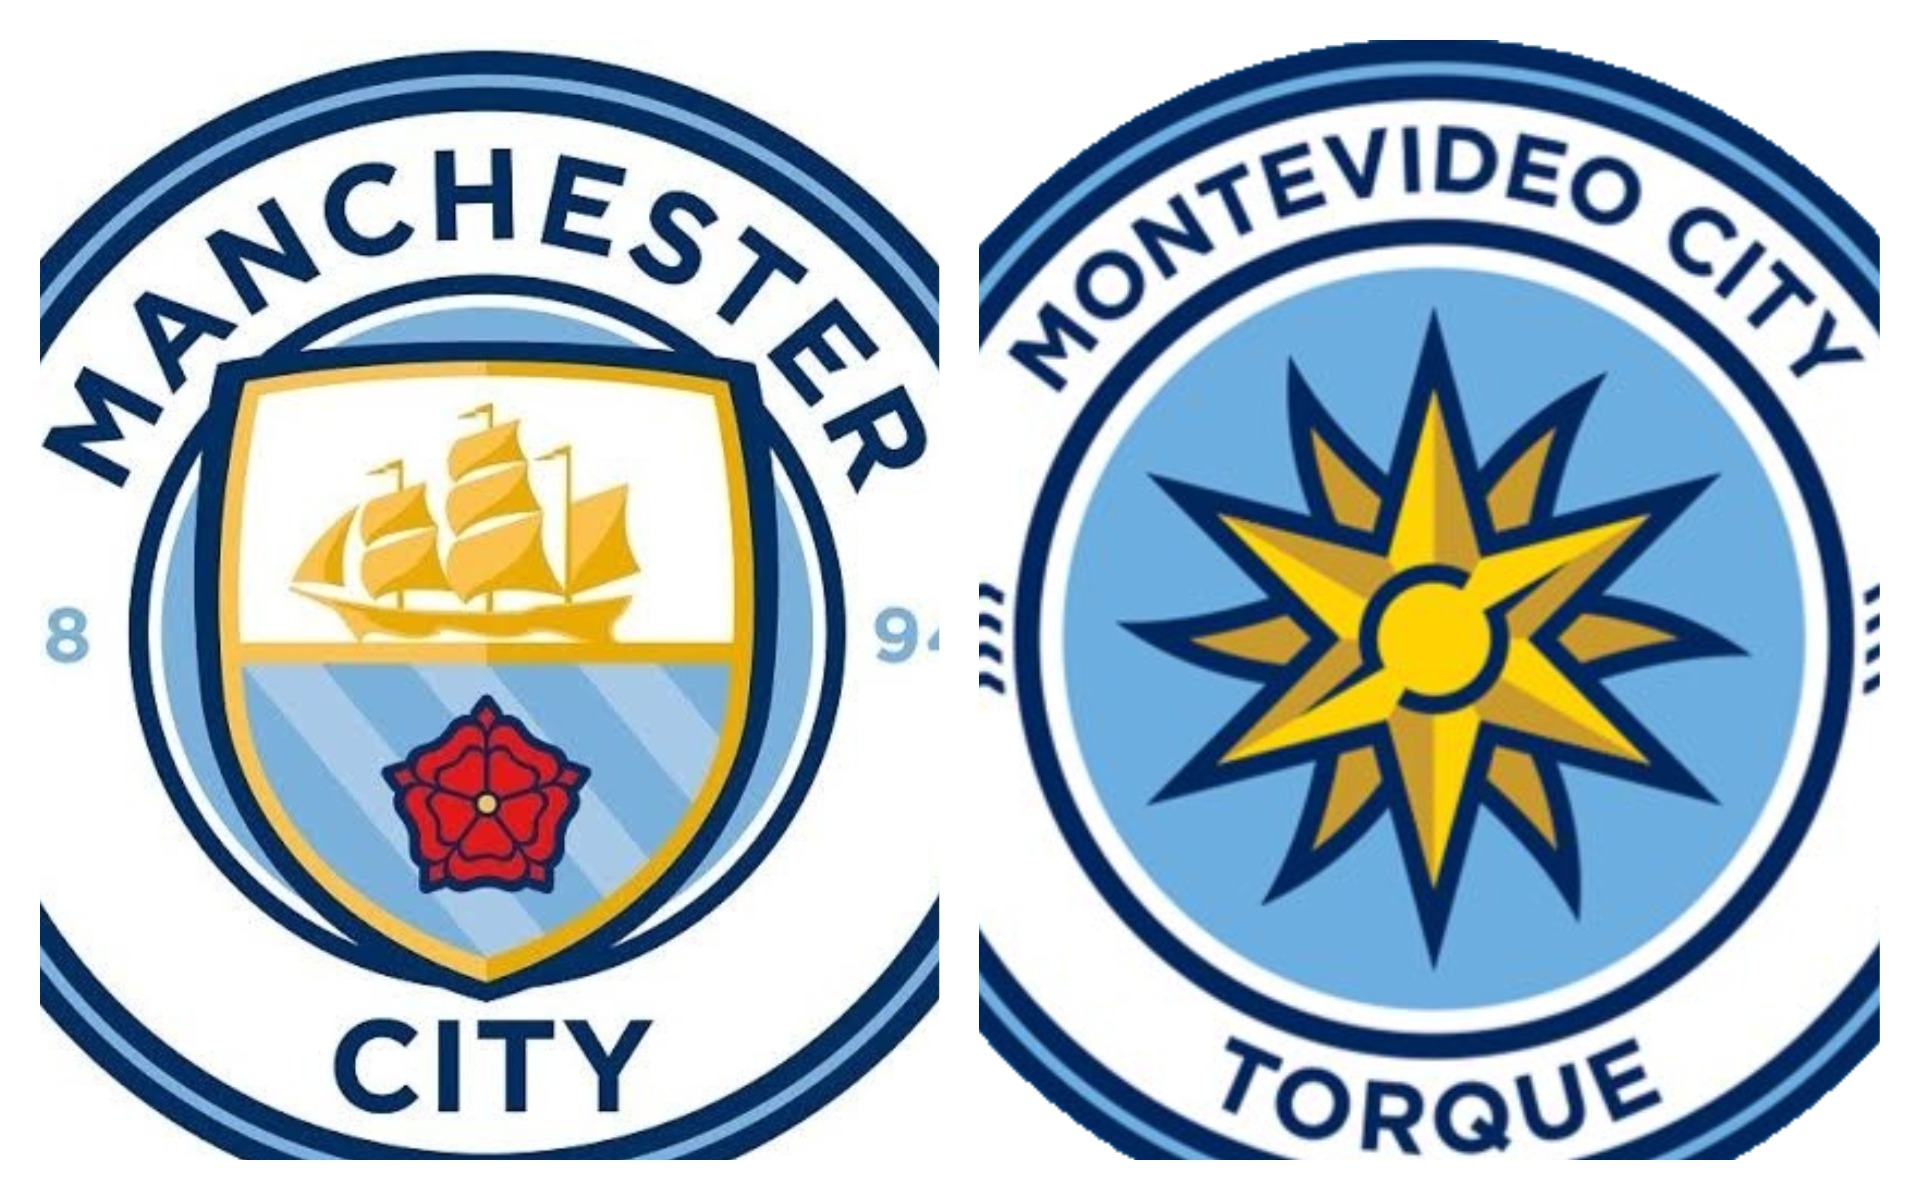 Os novos passos do Montevideo City Torque (e do City Group) na América do  Sul - Footure - Futebol e Cultura